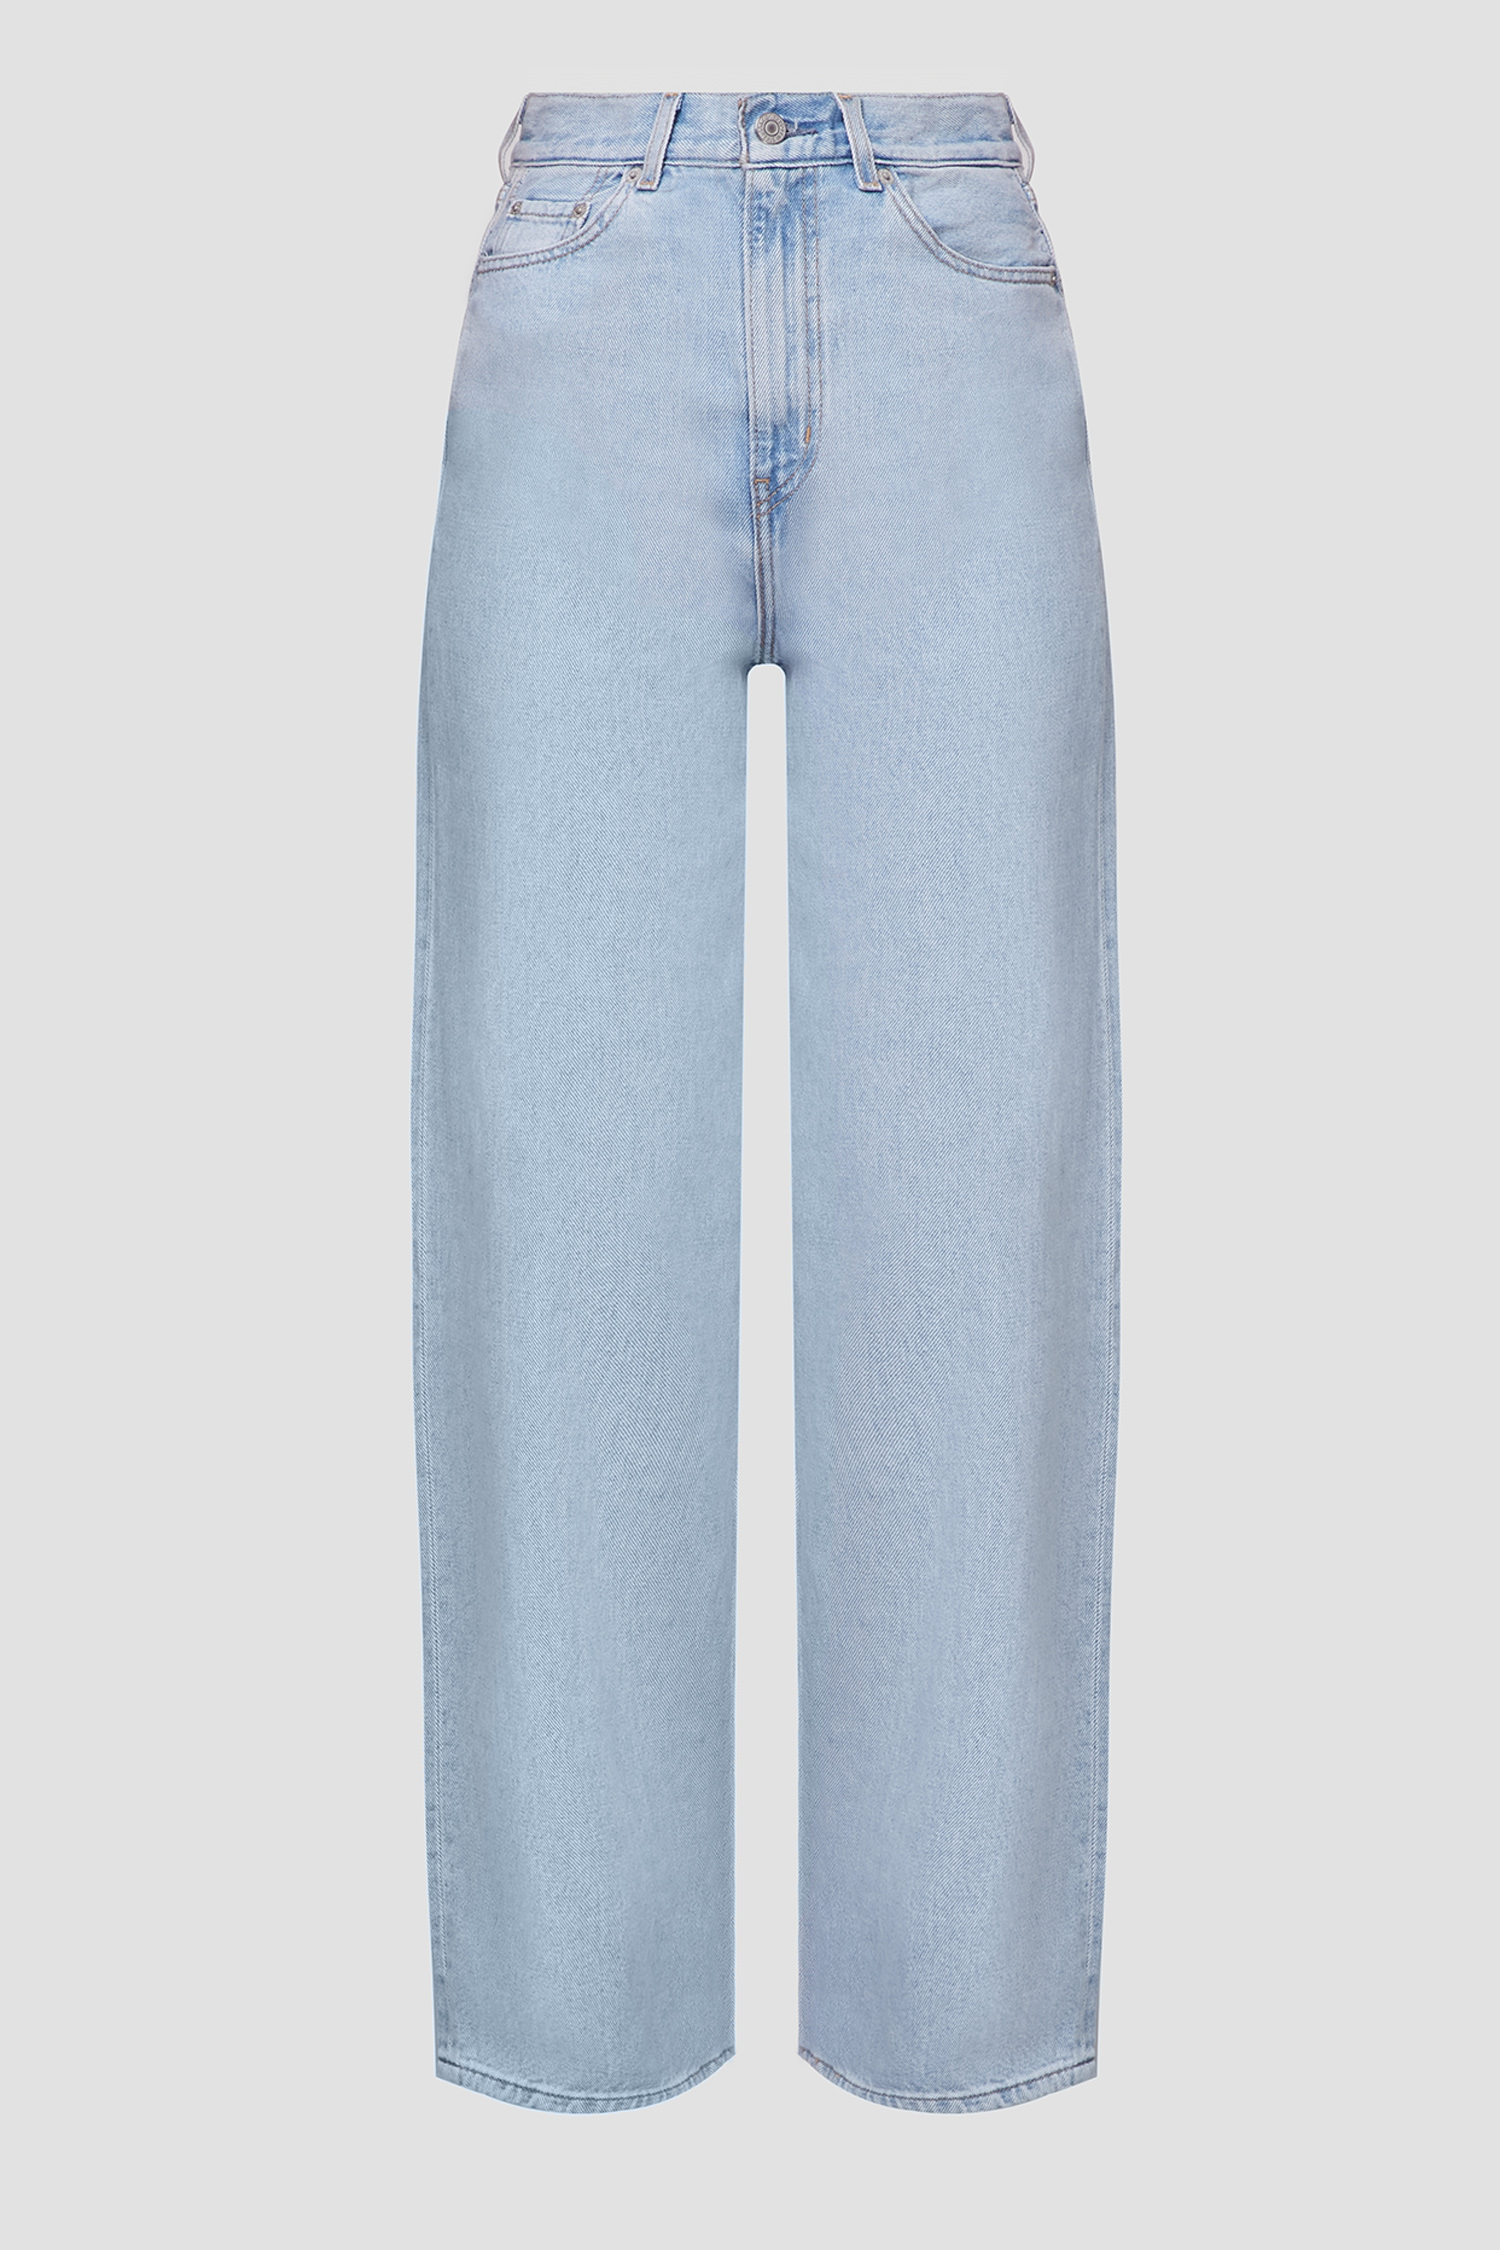 Calça Levis High Loose Jeans Azul de Mulher, 268720007